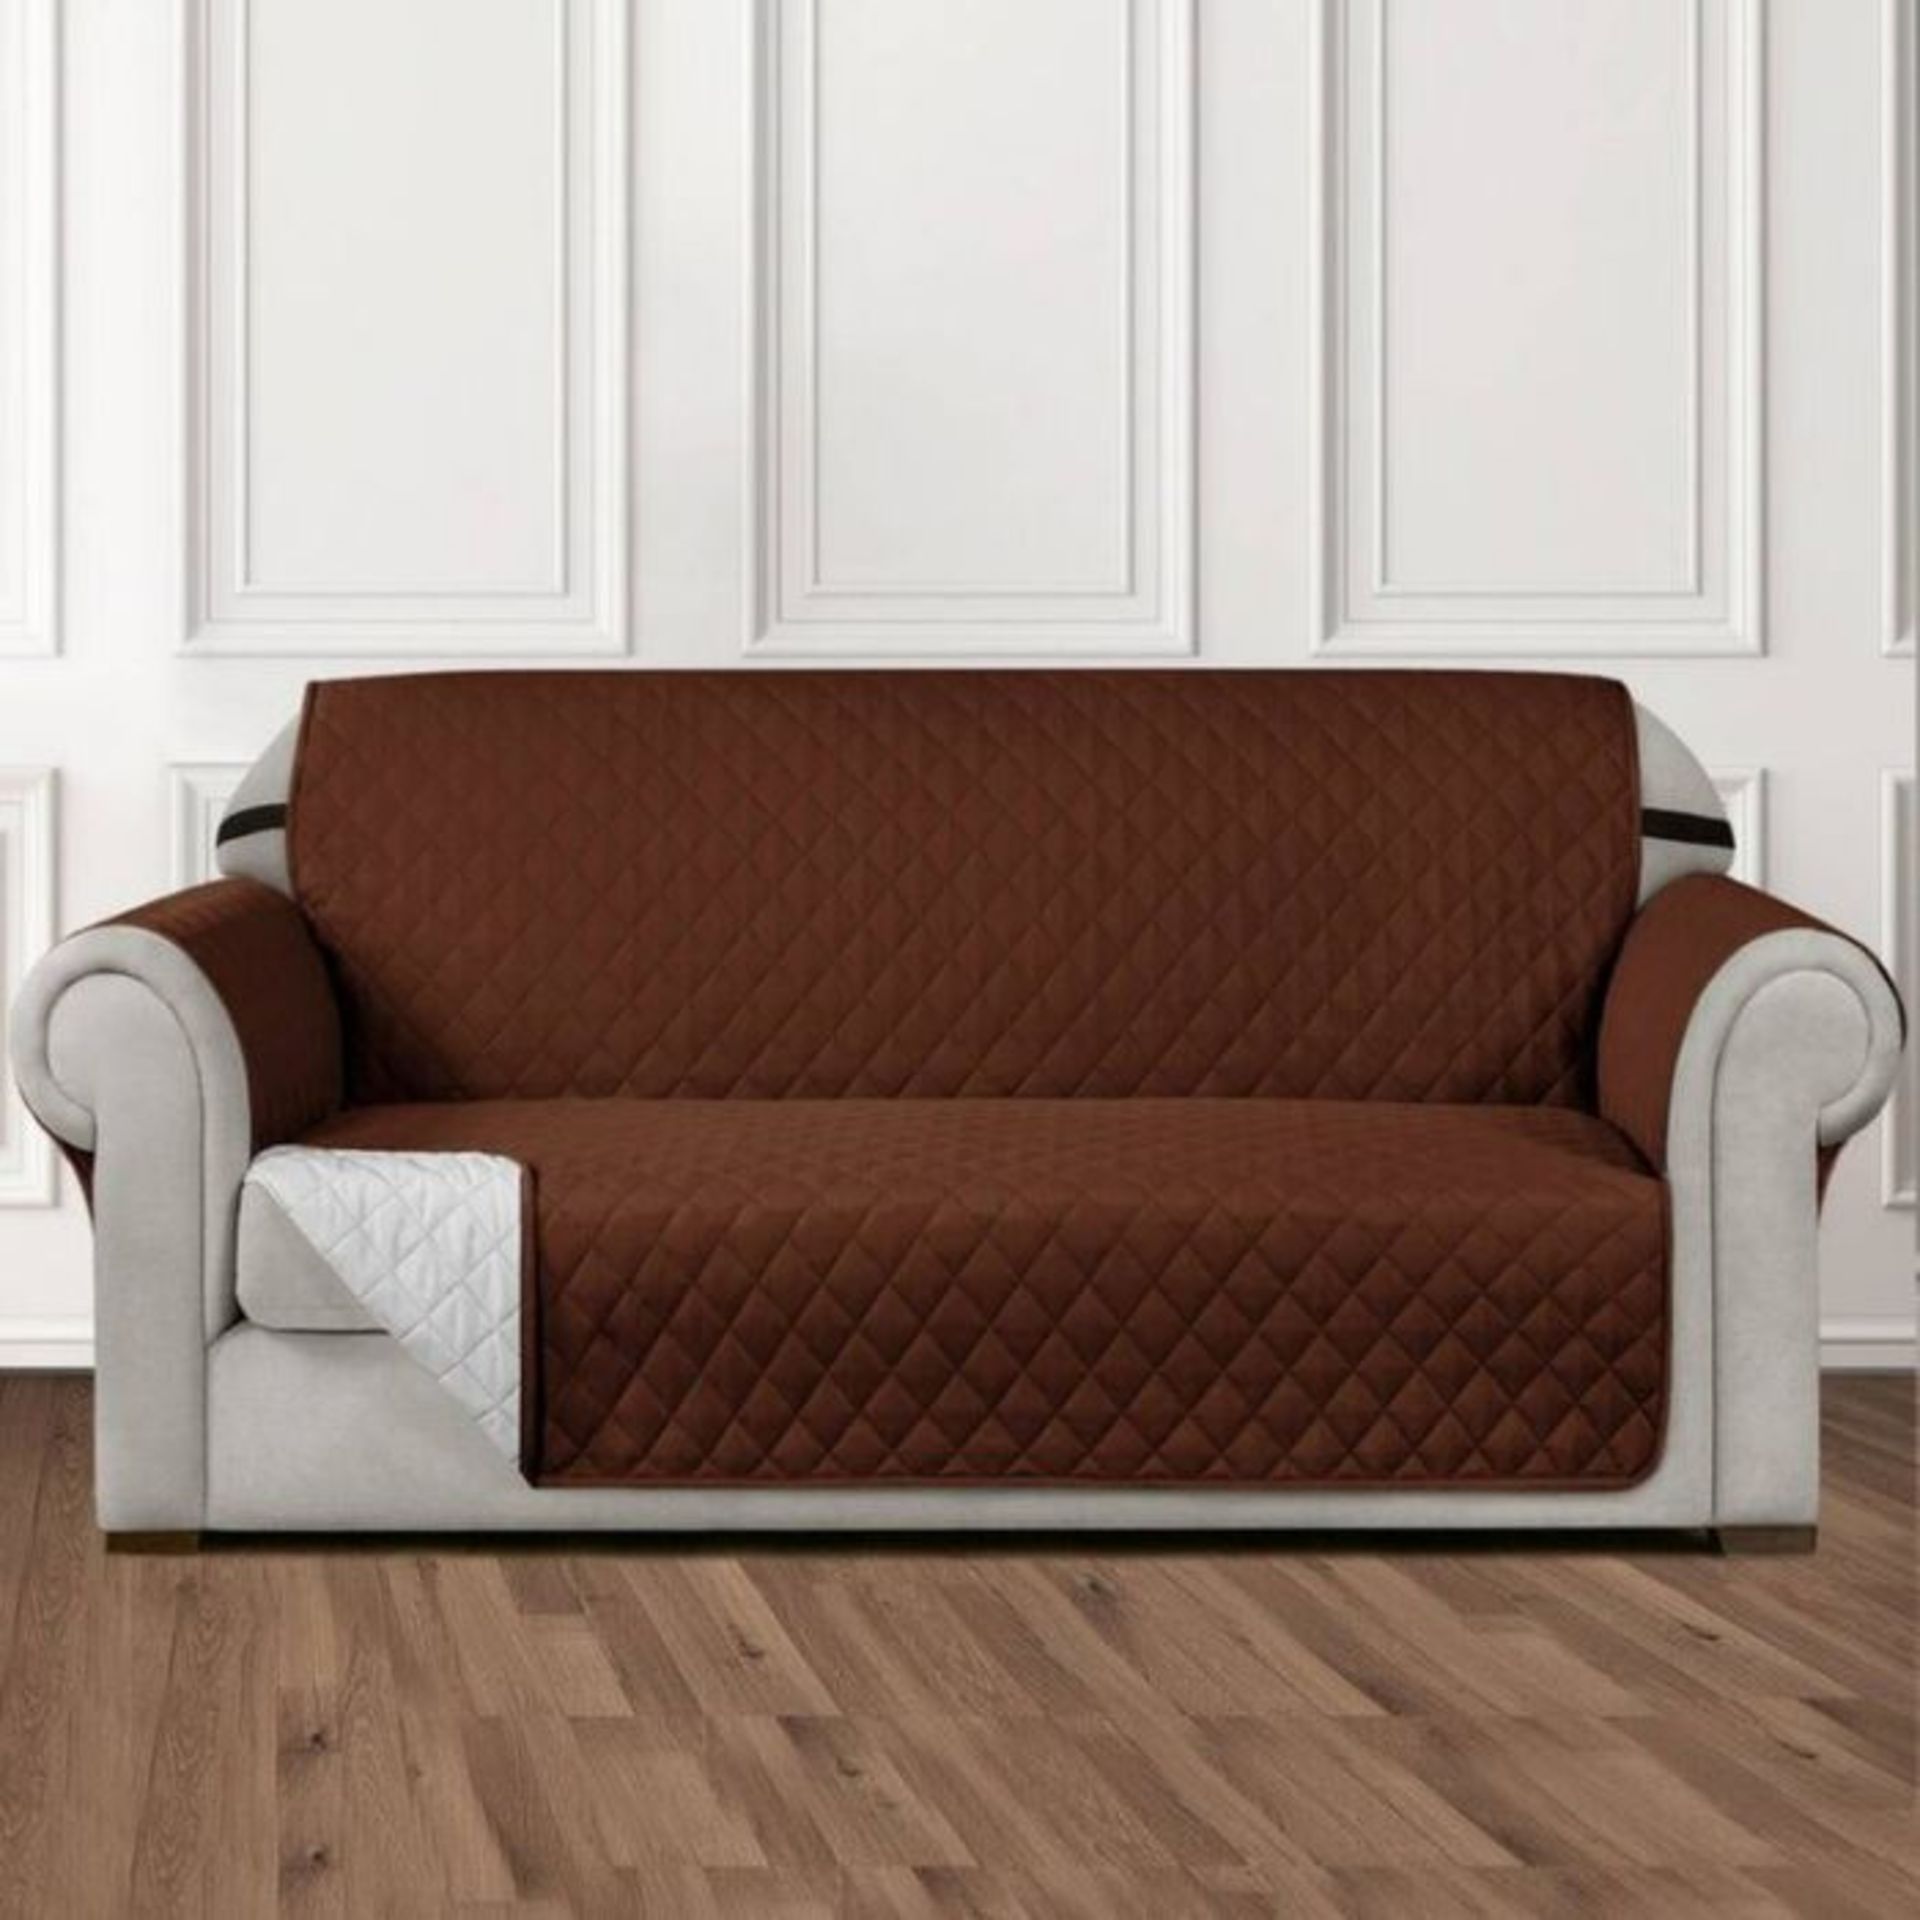 17 Stories, Box Cushion Sofa Slipcover Throw (CHOCOLATE) (194cm H X 168cm W X 56cm D) - RRP £ 52.